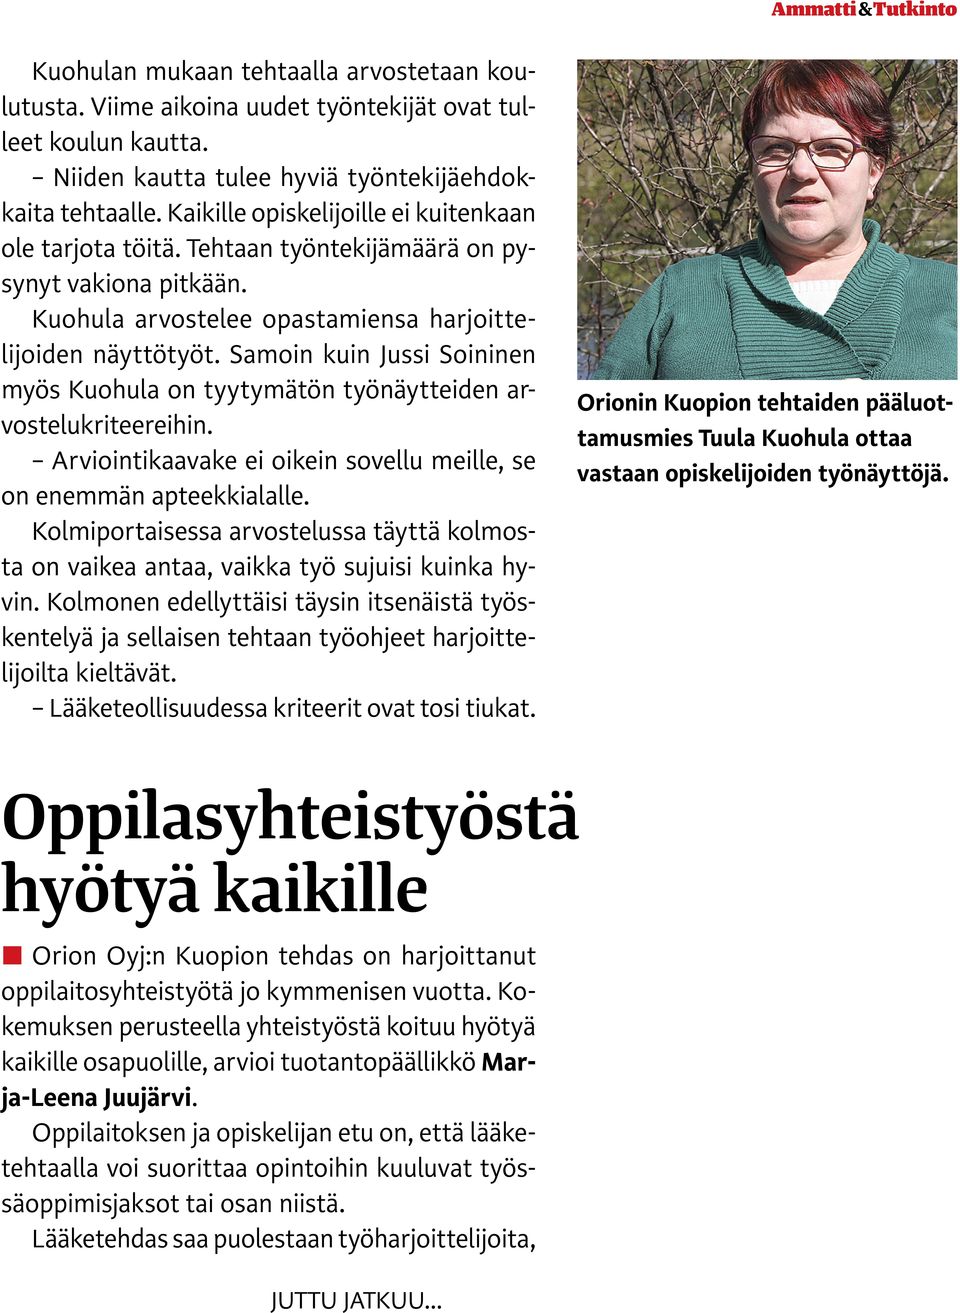 Samoin kuin Jussi Soininen myös Kuohula on tyytymätön työnäytteiden arvostelukriteereihin. Arviointikaavake ei oikein sovellu meille, se on enemmän apteekkialalle.